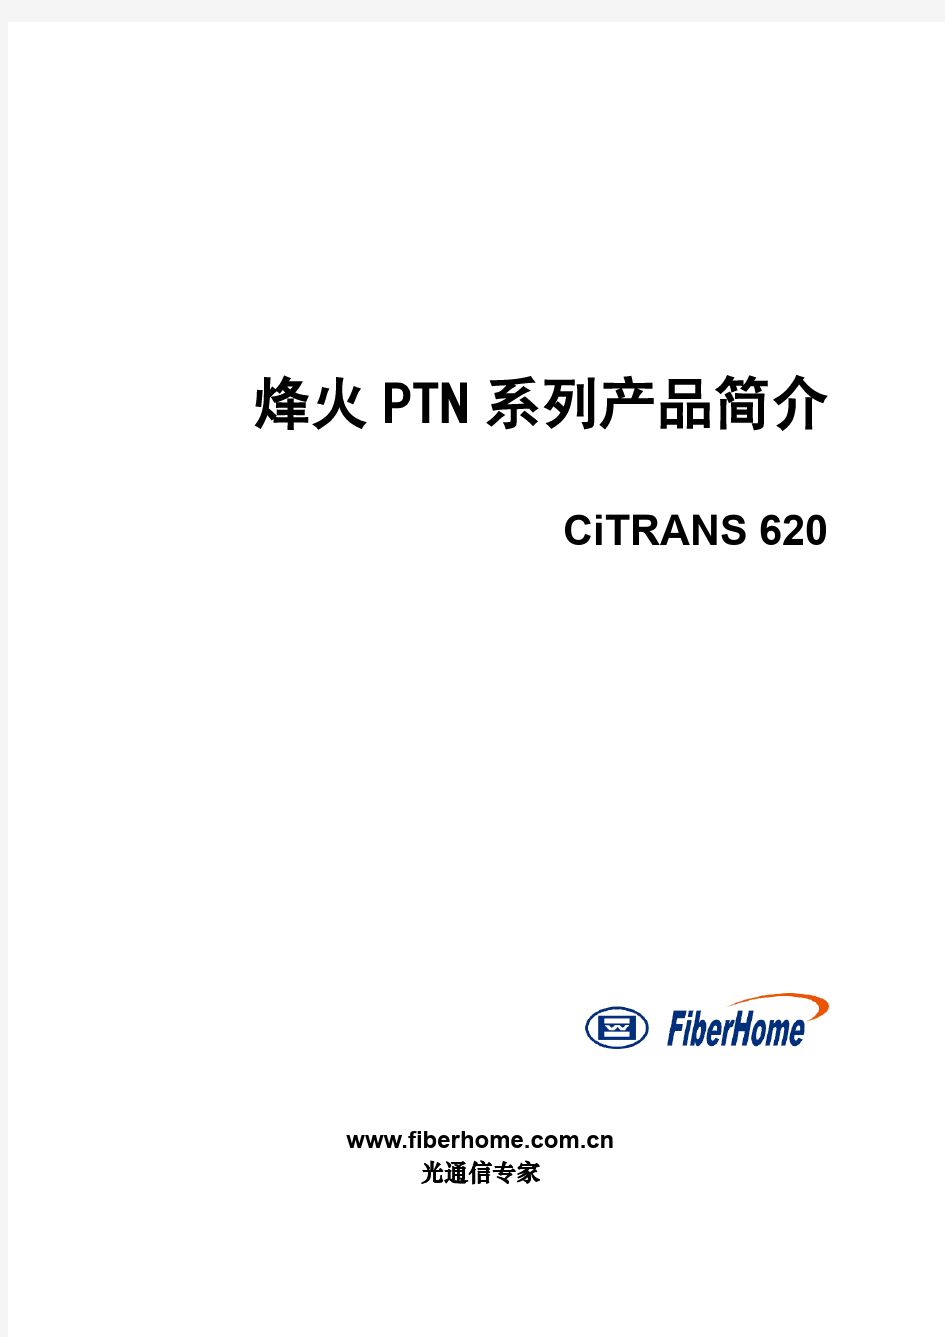 烽火PTN系列产品简介CiTRANS 620